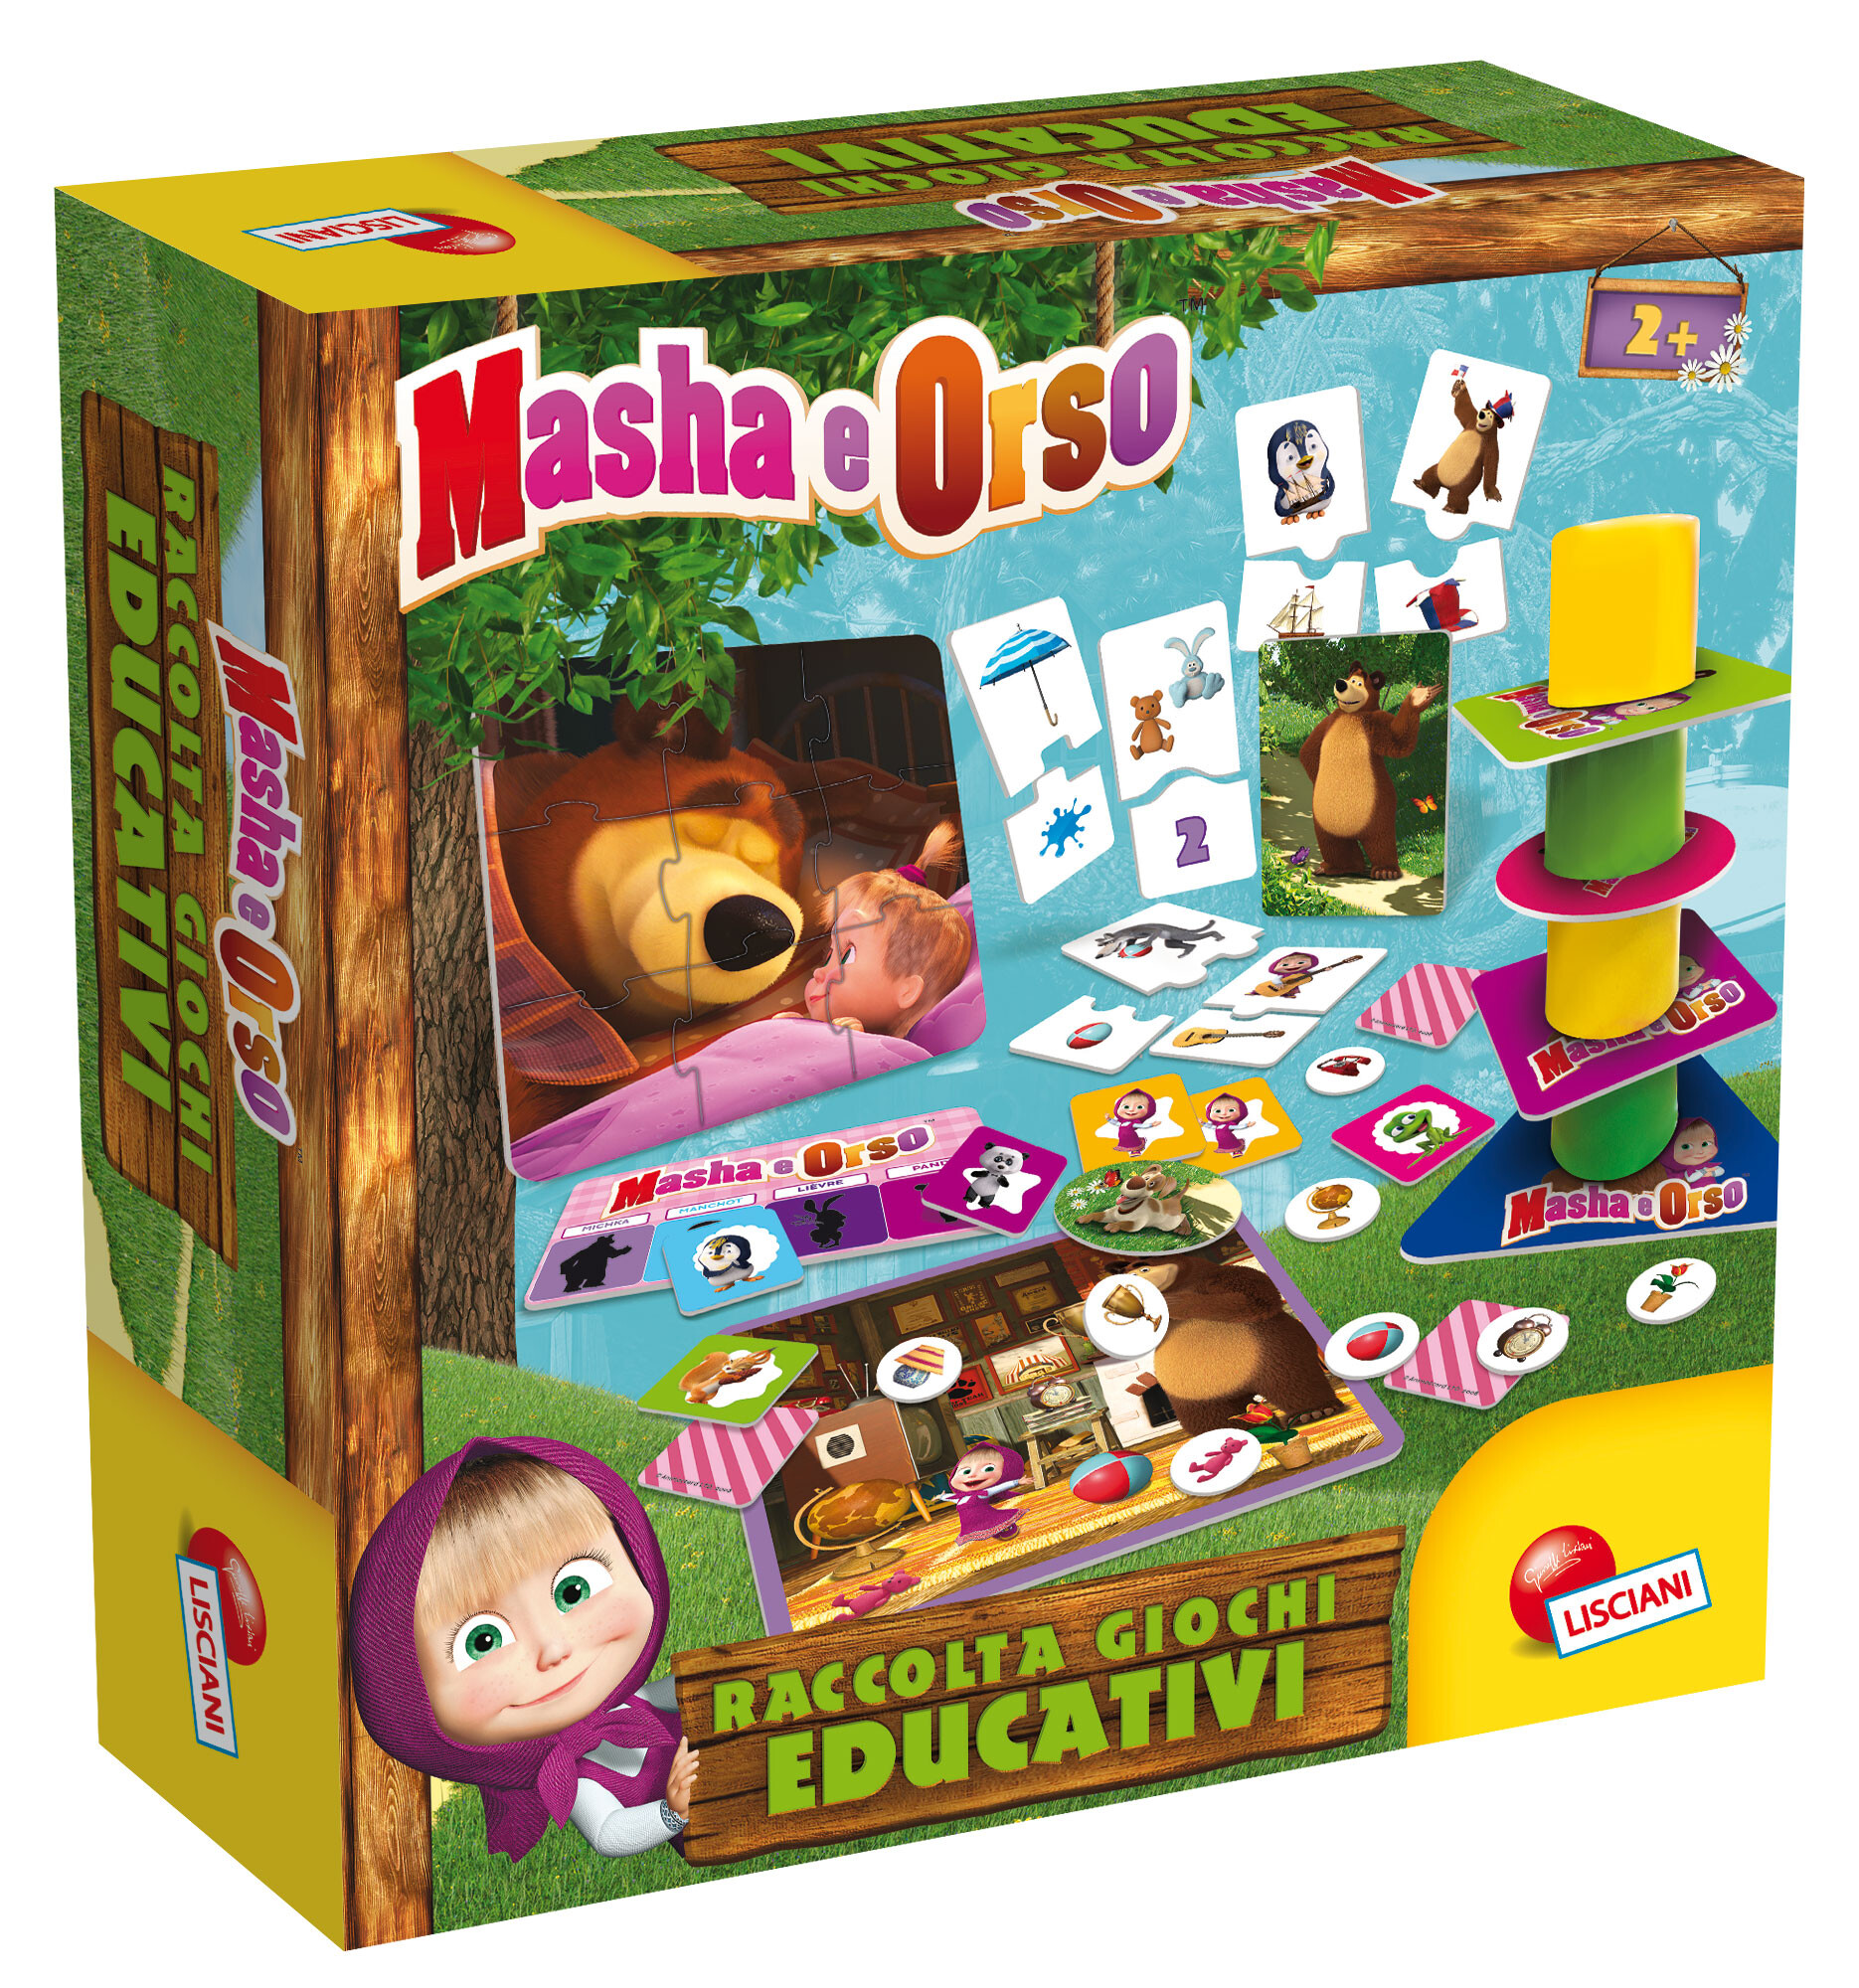 MASHA E ORSO RACCOLTA GIOCHI EDUCATIVI - Toys Center